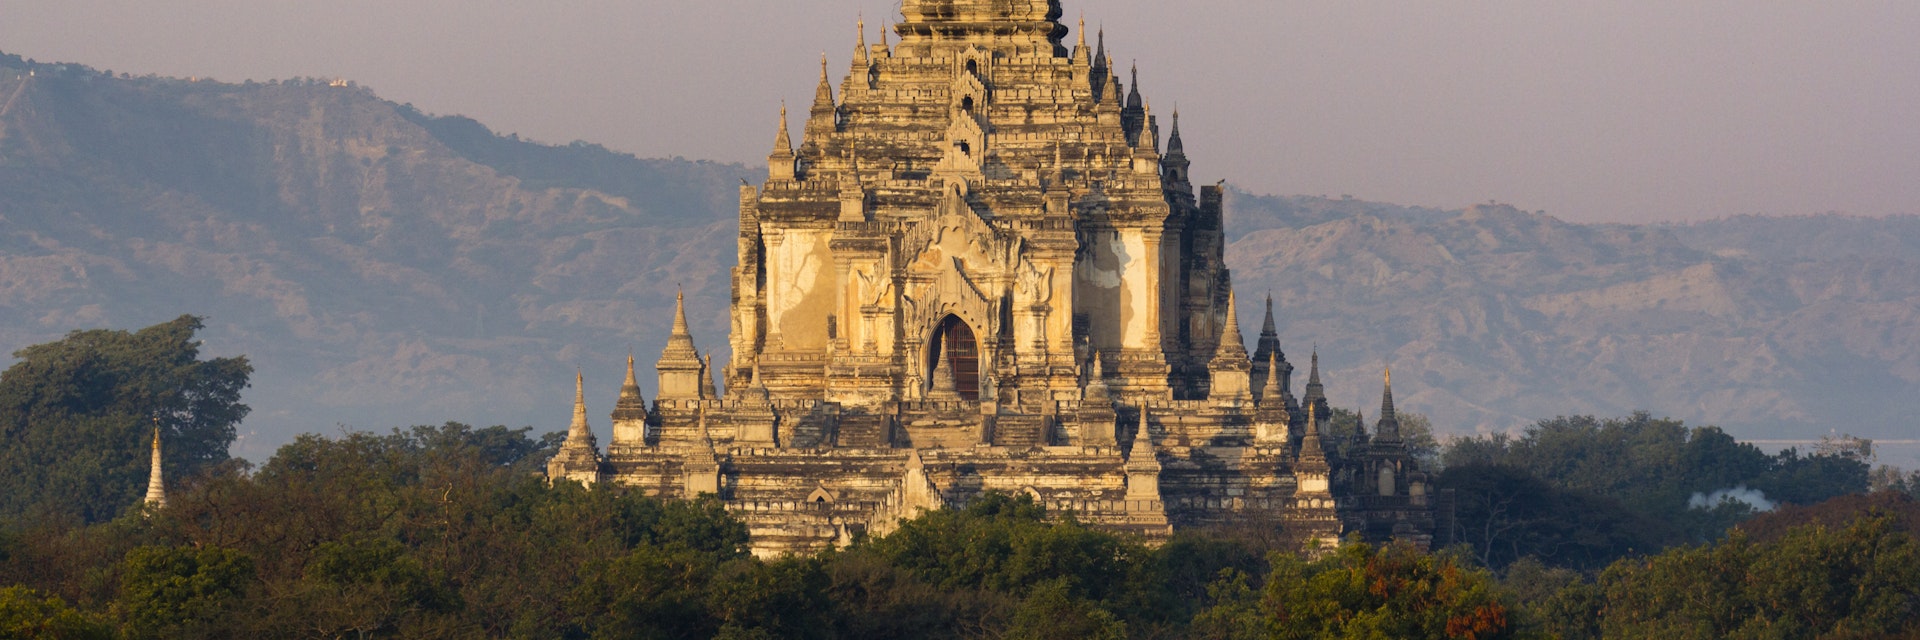 The Ananda Temple in Bagan, Myanmar